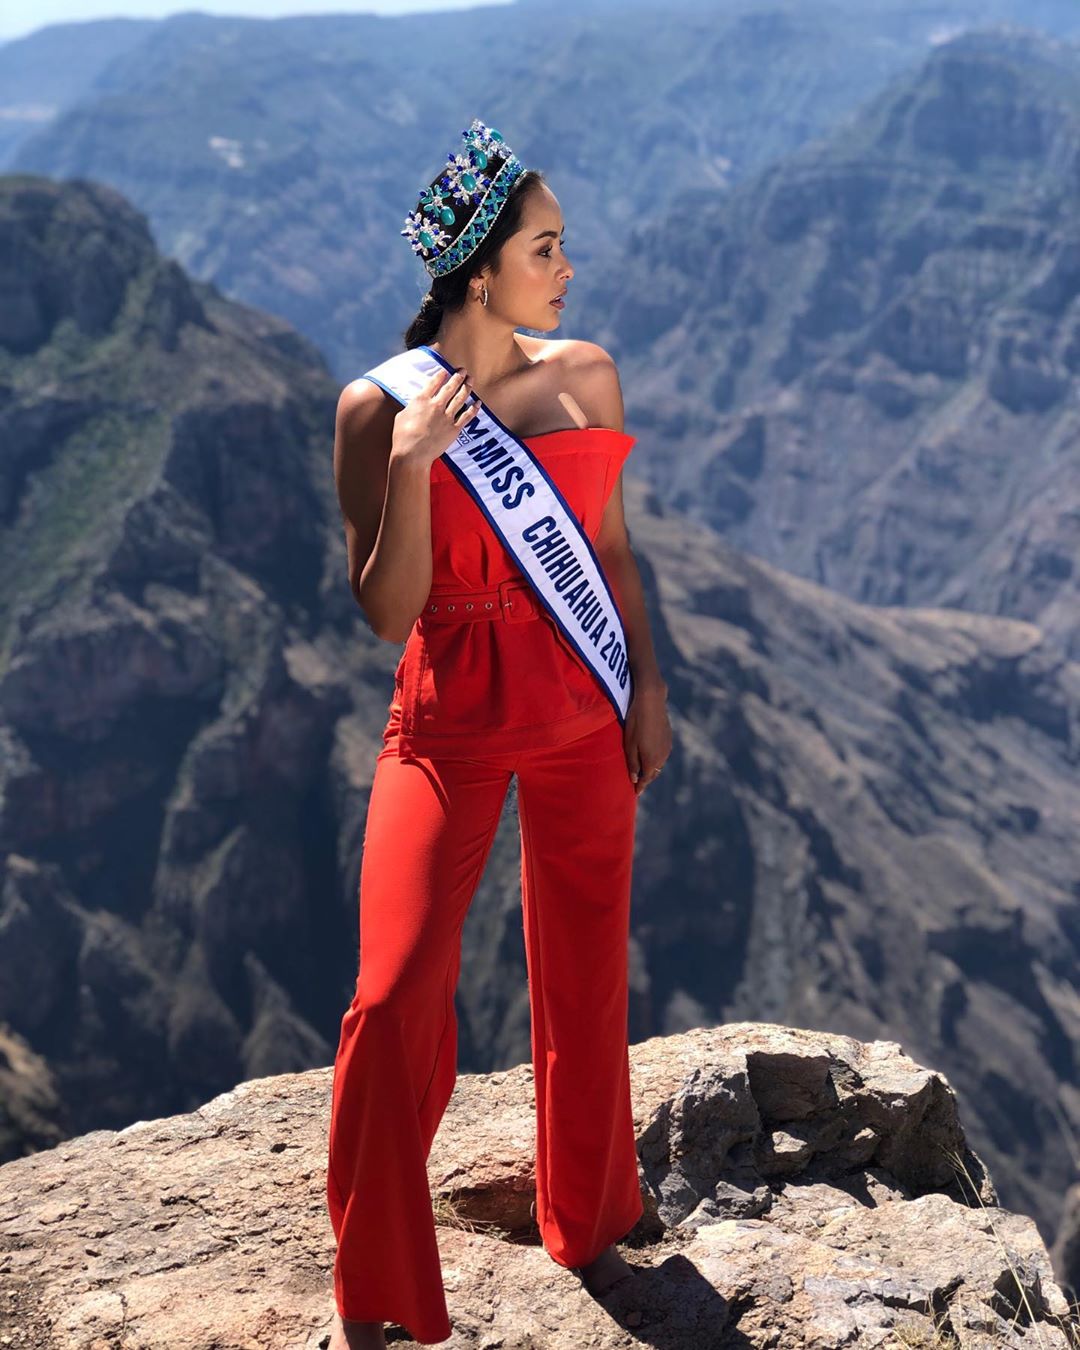 ashley alvidrez, top 12 de miss world 2019. - Página 2 60021311